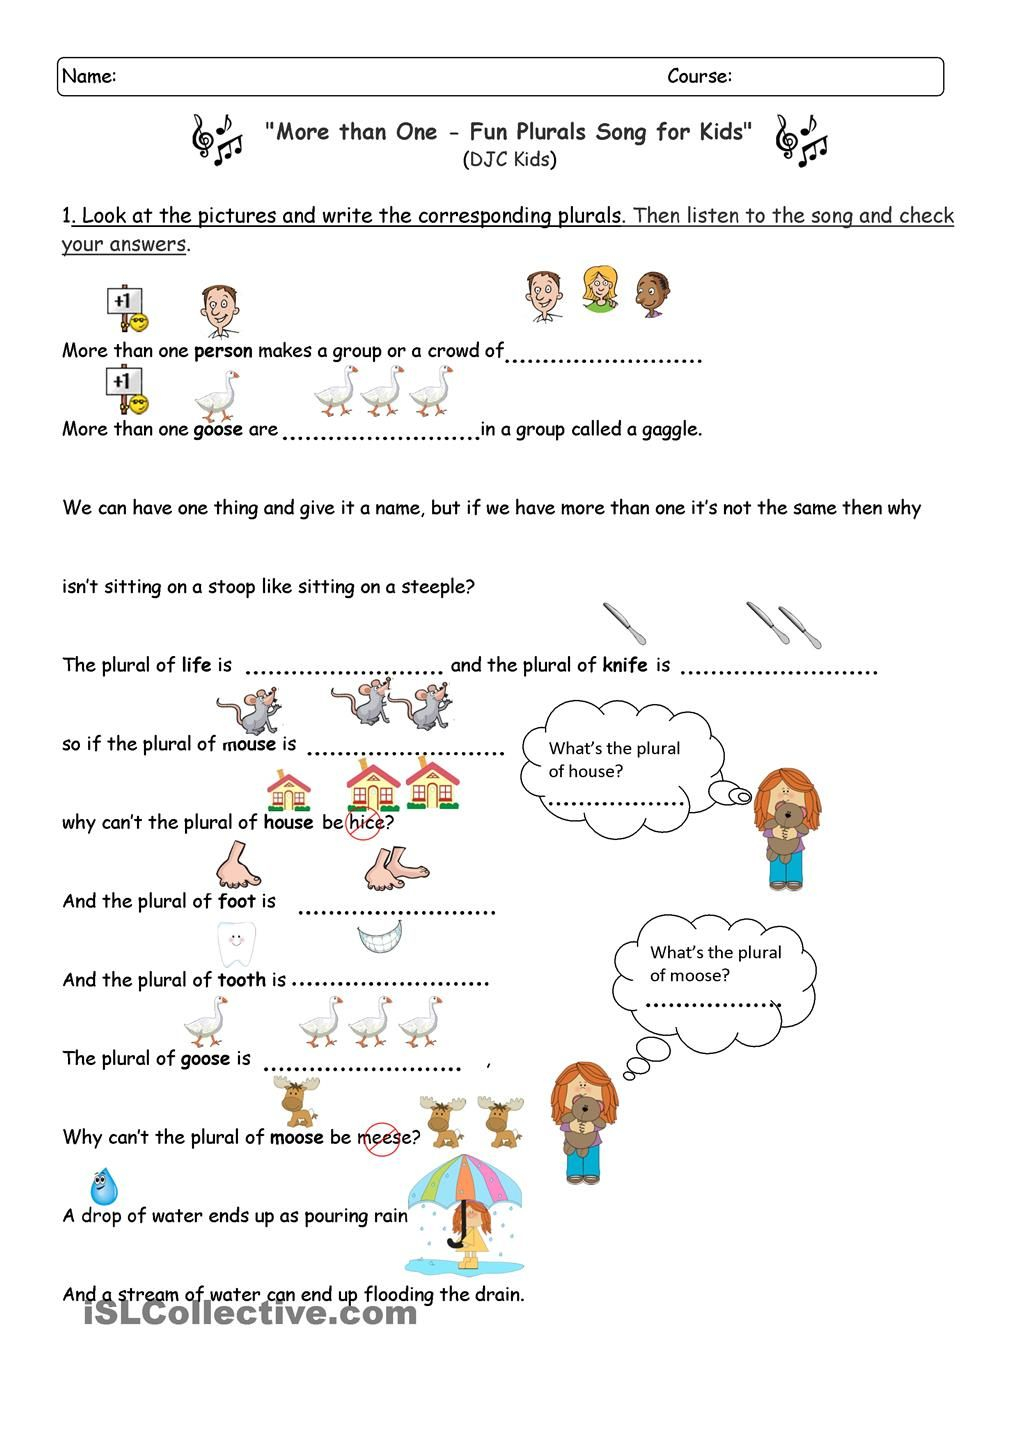 MORE THAN ONE Plurals Song Plurals Nouns Worksheet 1st Grade Math